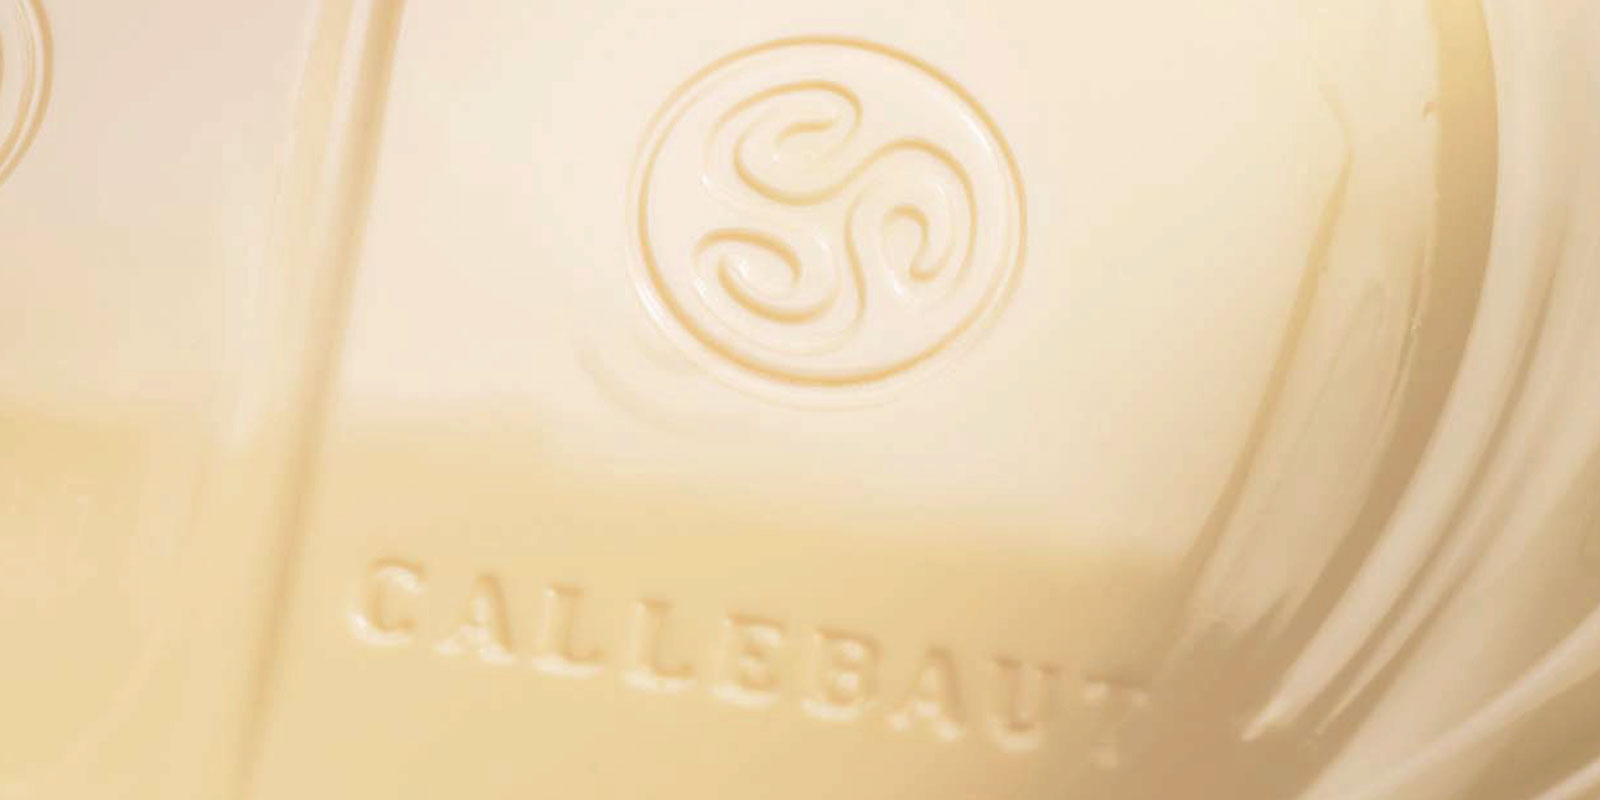 Cokollata te bardha nga Callebaut Cokollata e bardhe eshte rezultat i perzierjes se gjalpit te kakaos, qumeshtit pluhur dhe sheqerit. Raporti i perzierjes se ketyre perberesve - per shembull vanilina, vanilja ose lecitina - percakton shijen e produktit perfundimtar.